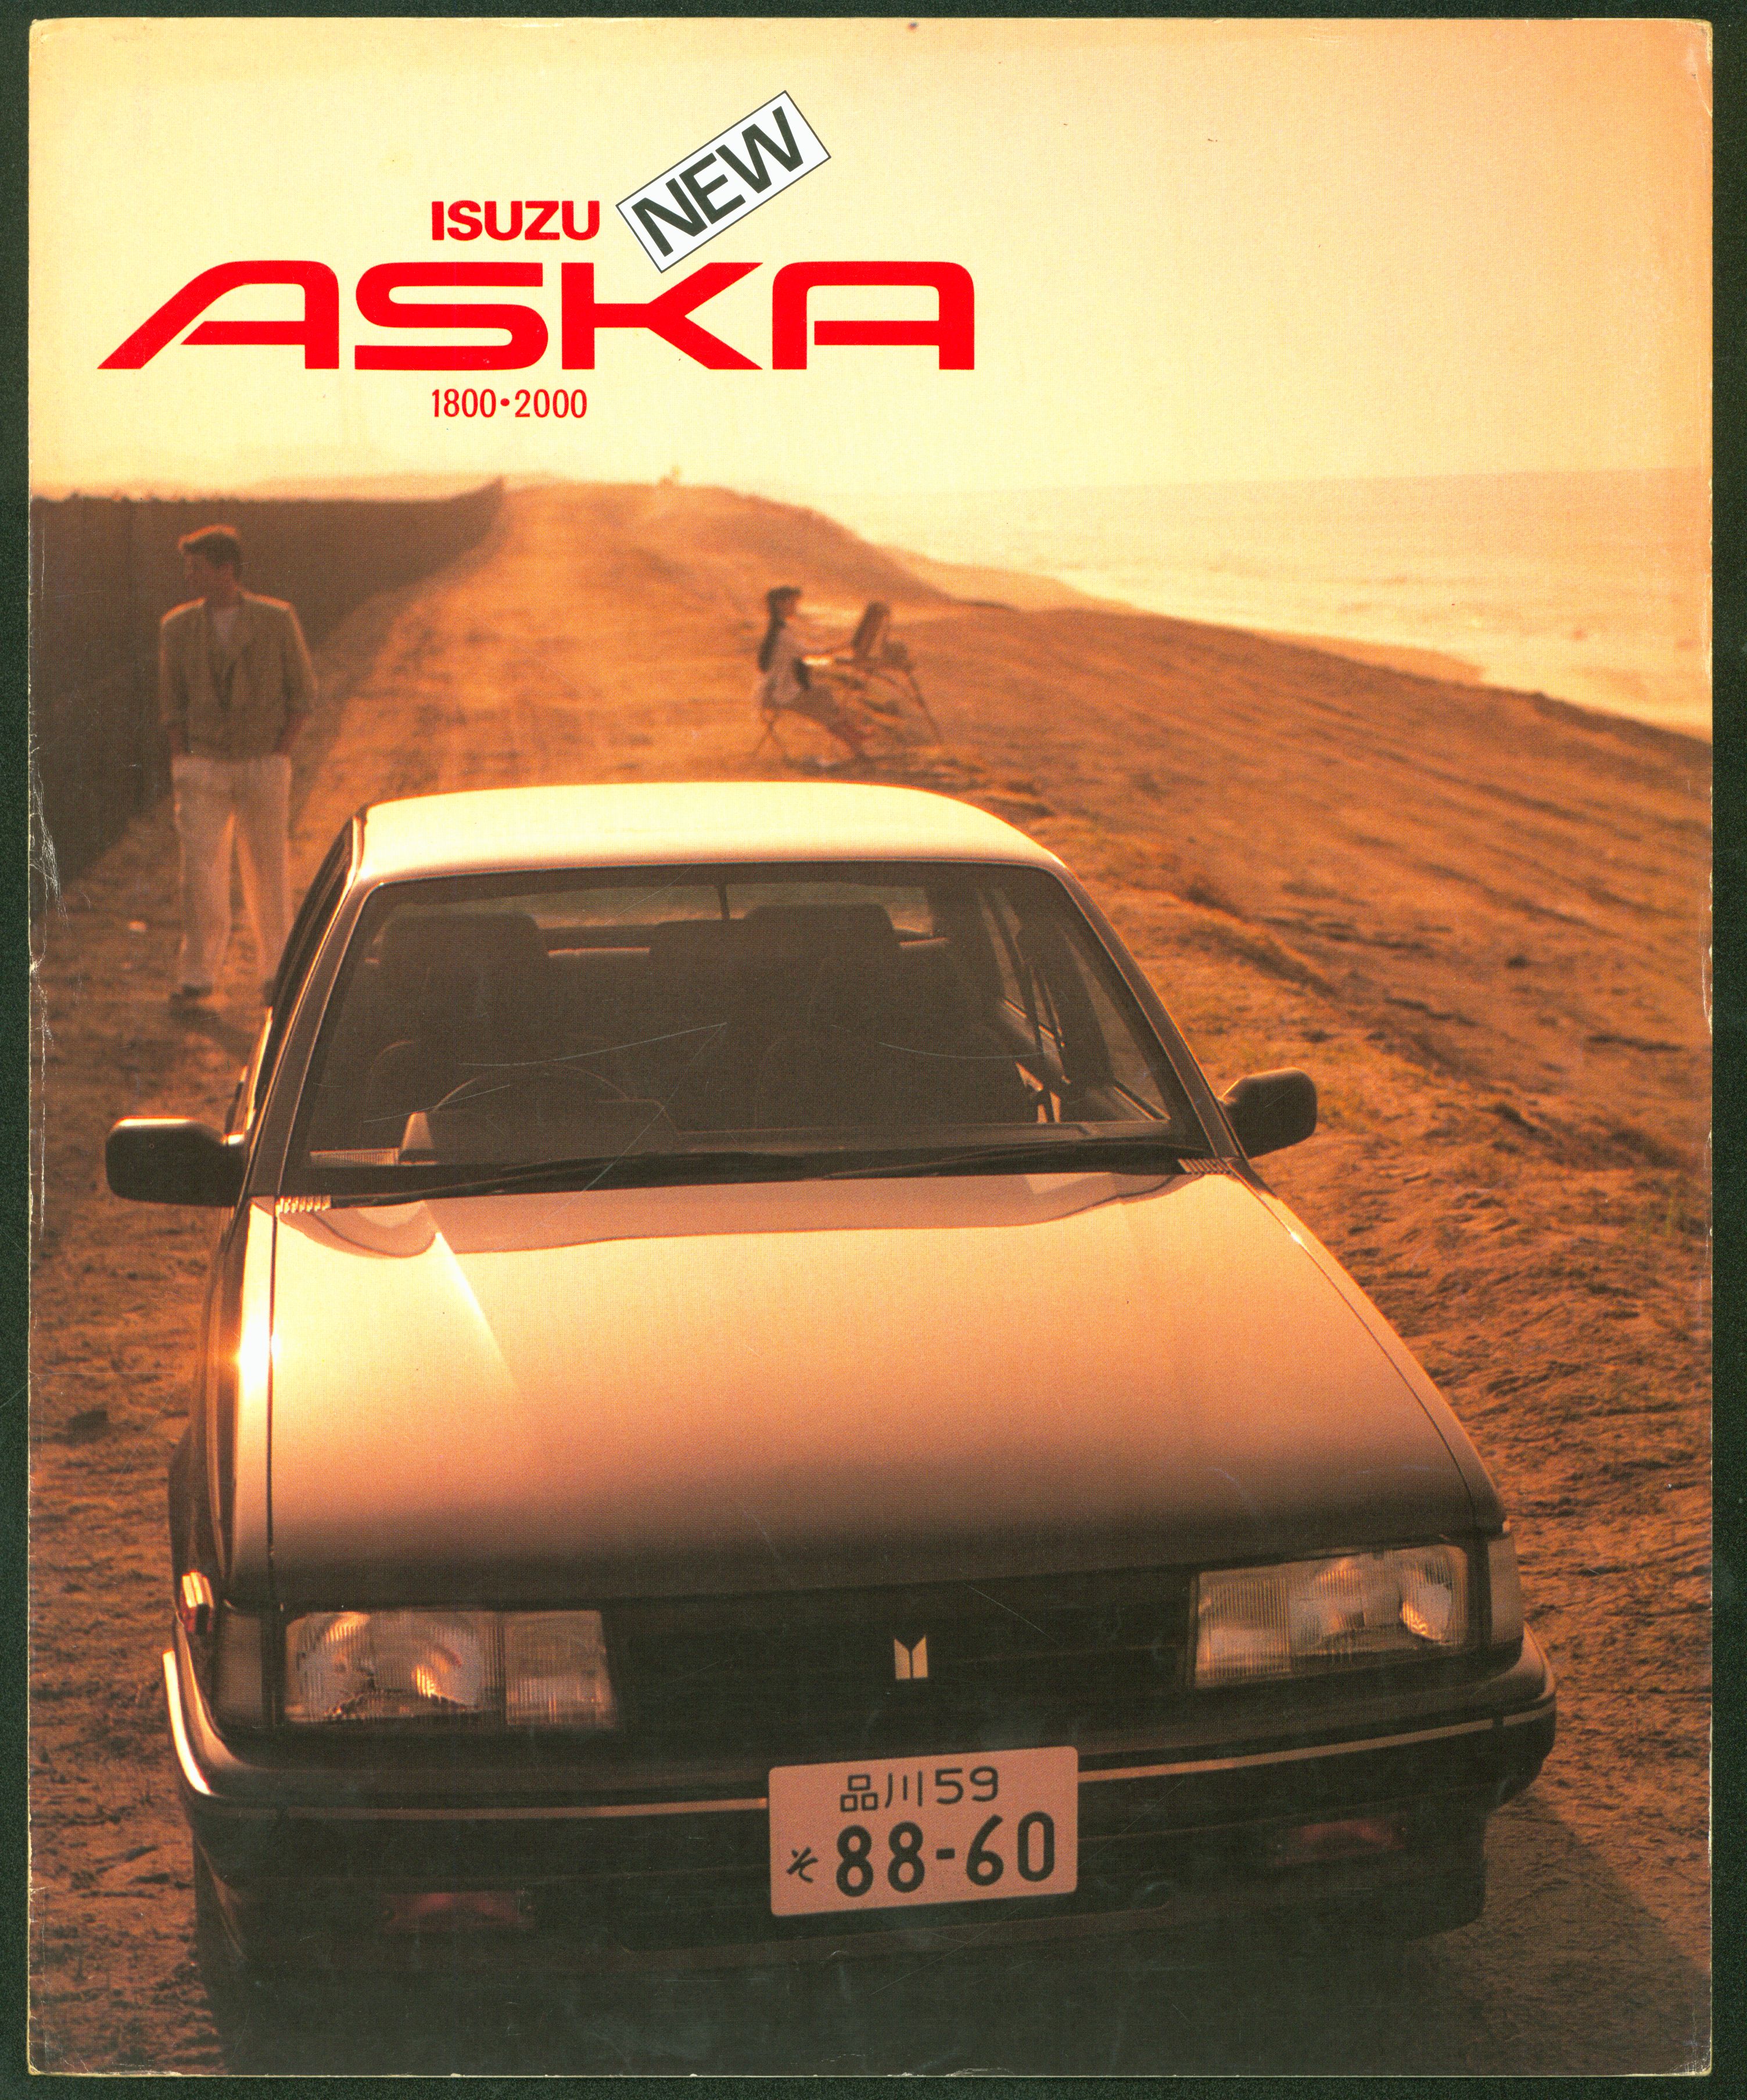 いすゞ自動車株式会社 車カタログ ISUZU NEW ASKA 1800 ・ 2000 PC